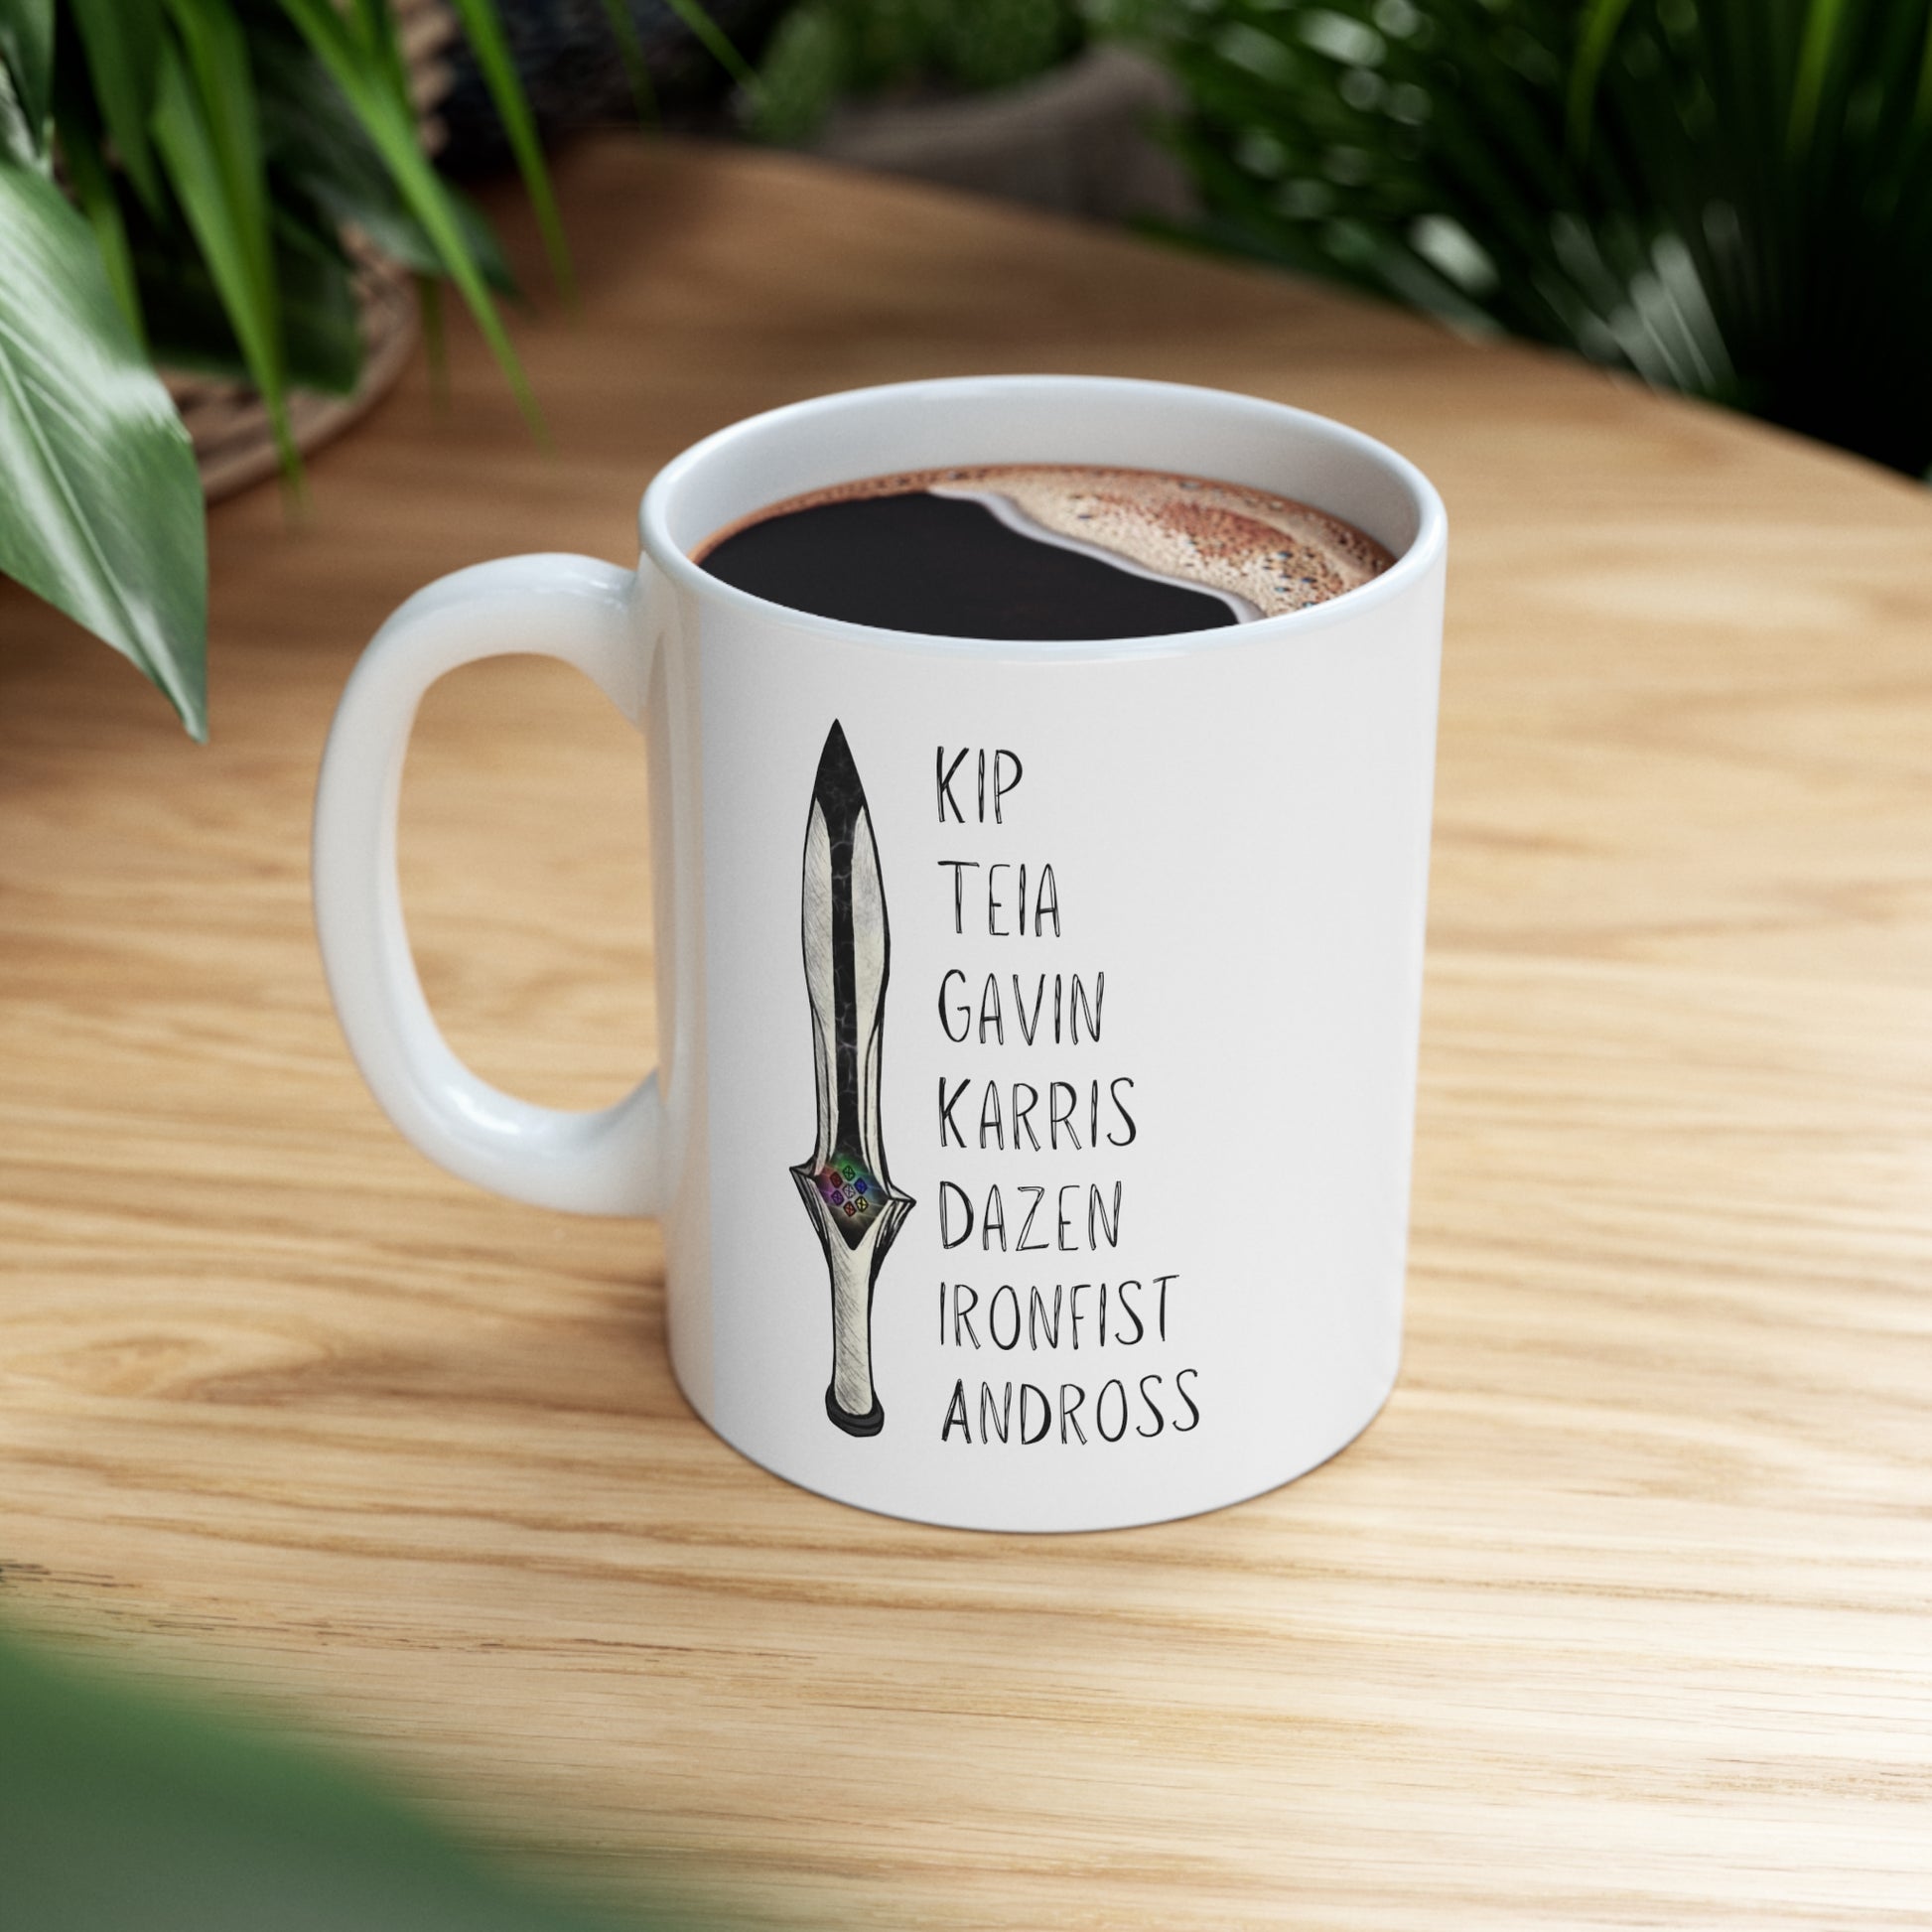 lightbringer coffee mug